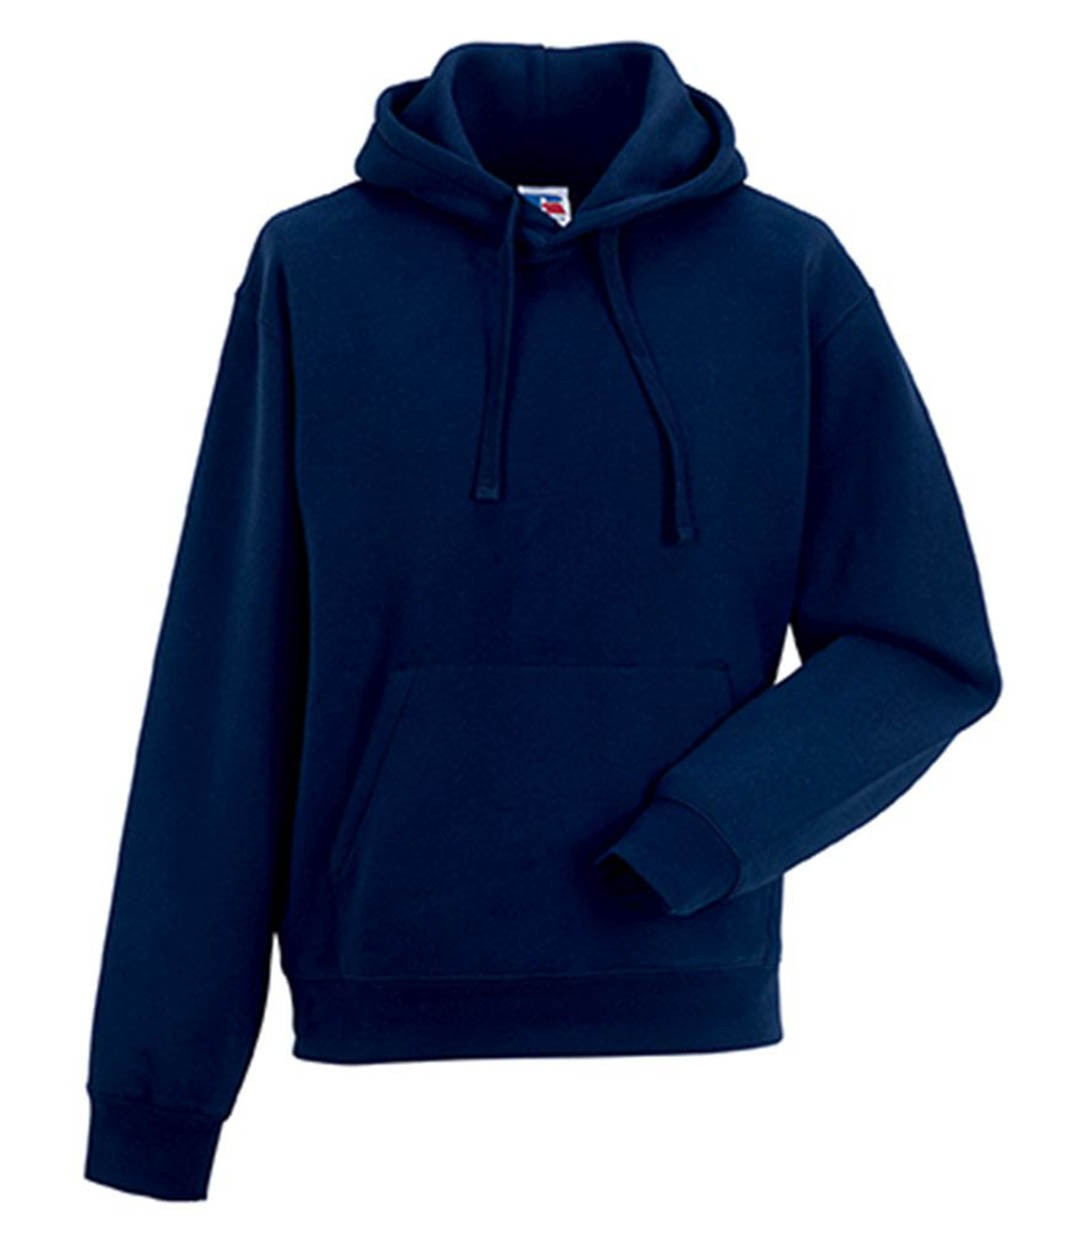 Russell 265M Authentic Hooded Sweatshirt - Standard Hoodies - Hoodies -  Sweatshirts - Leisurewear - Best Workwear